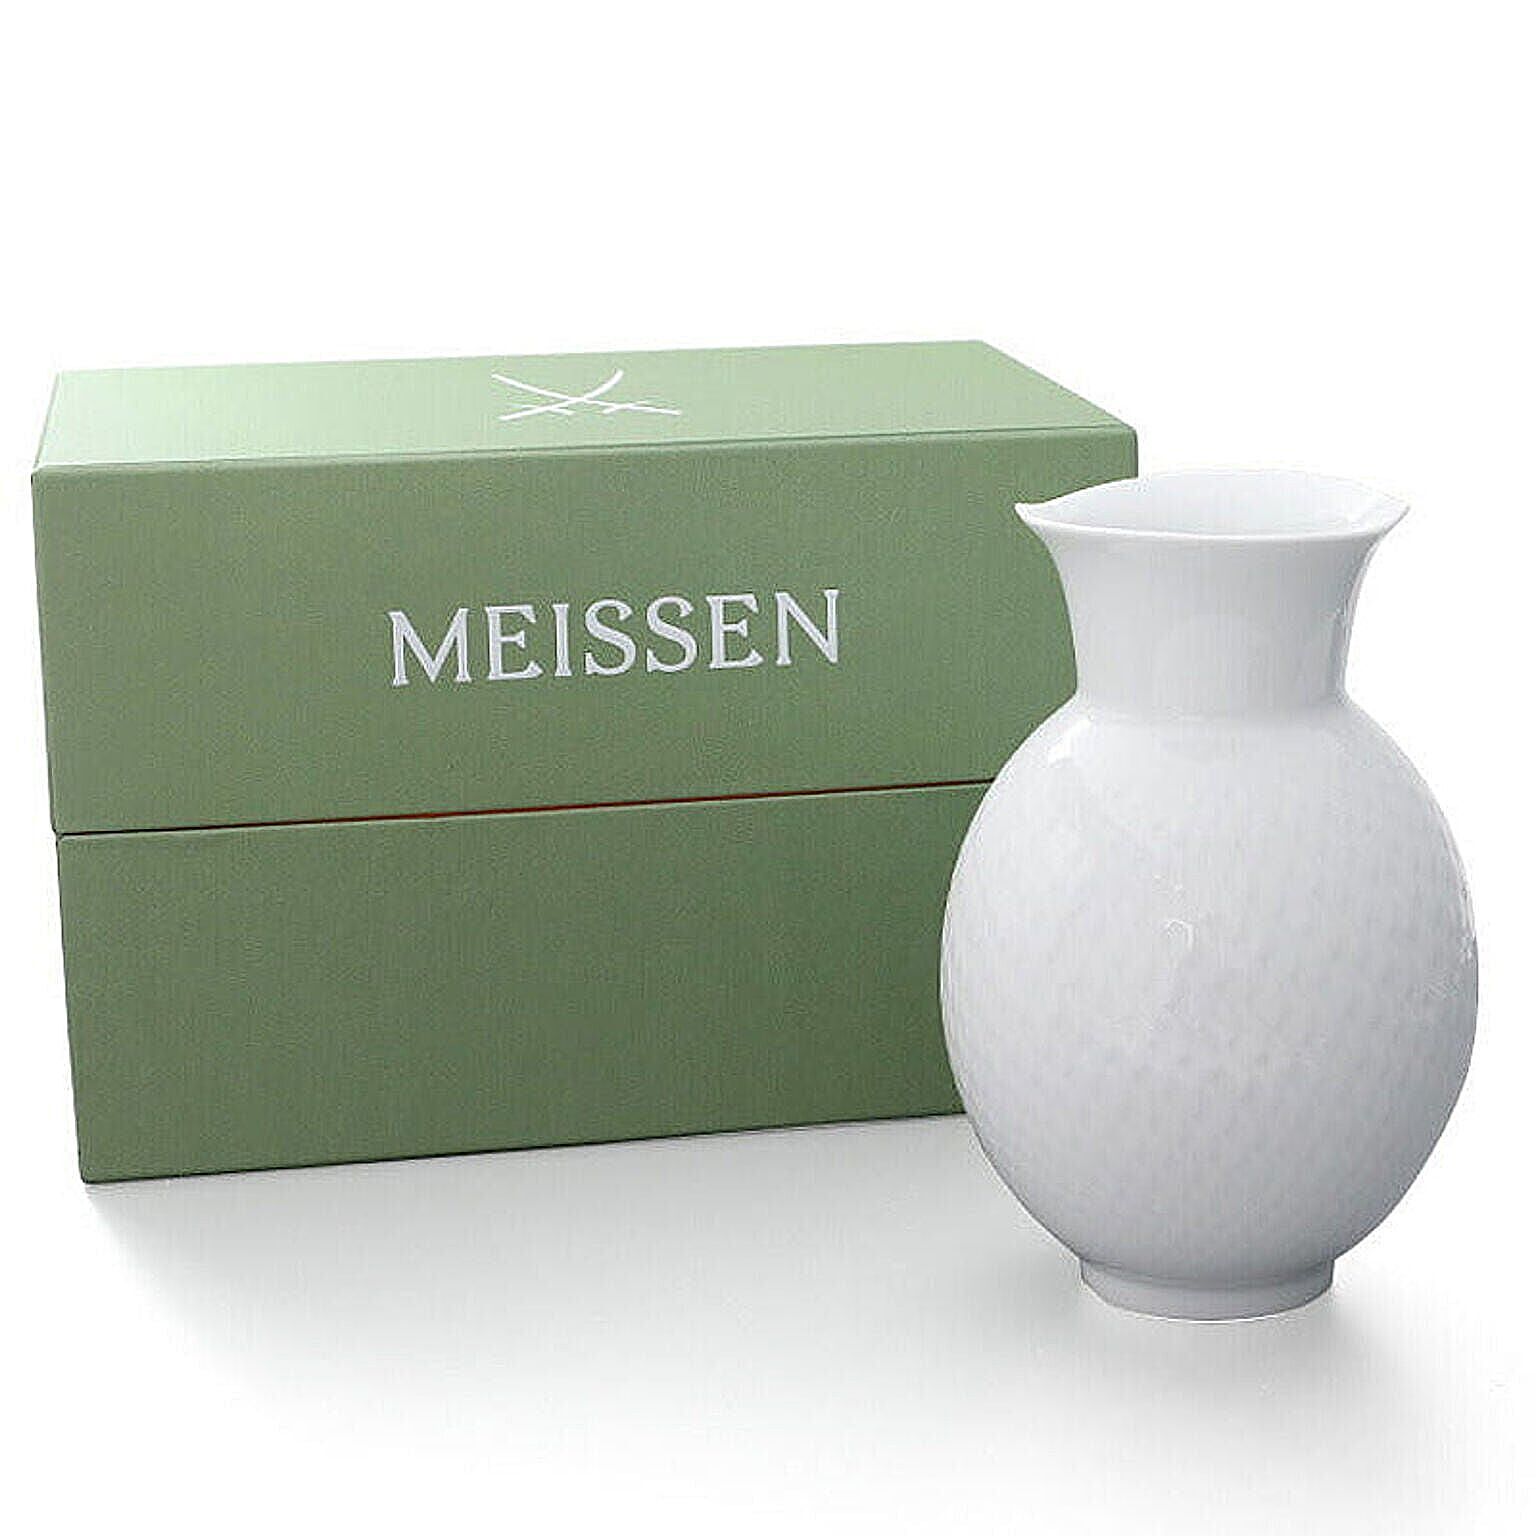 Meissen マイセン 波の戯れ フラワーベース ホワイト 20.5cm 000001